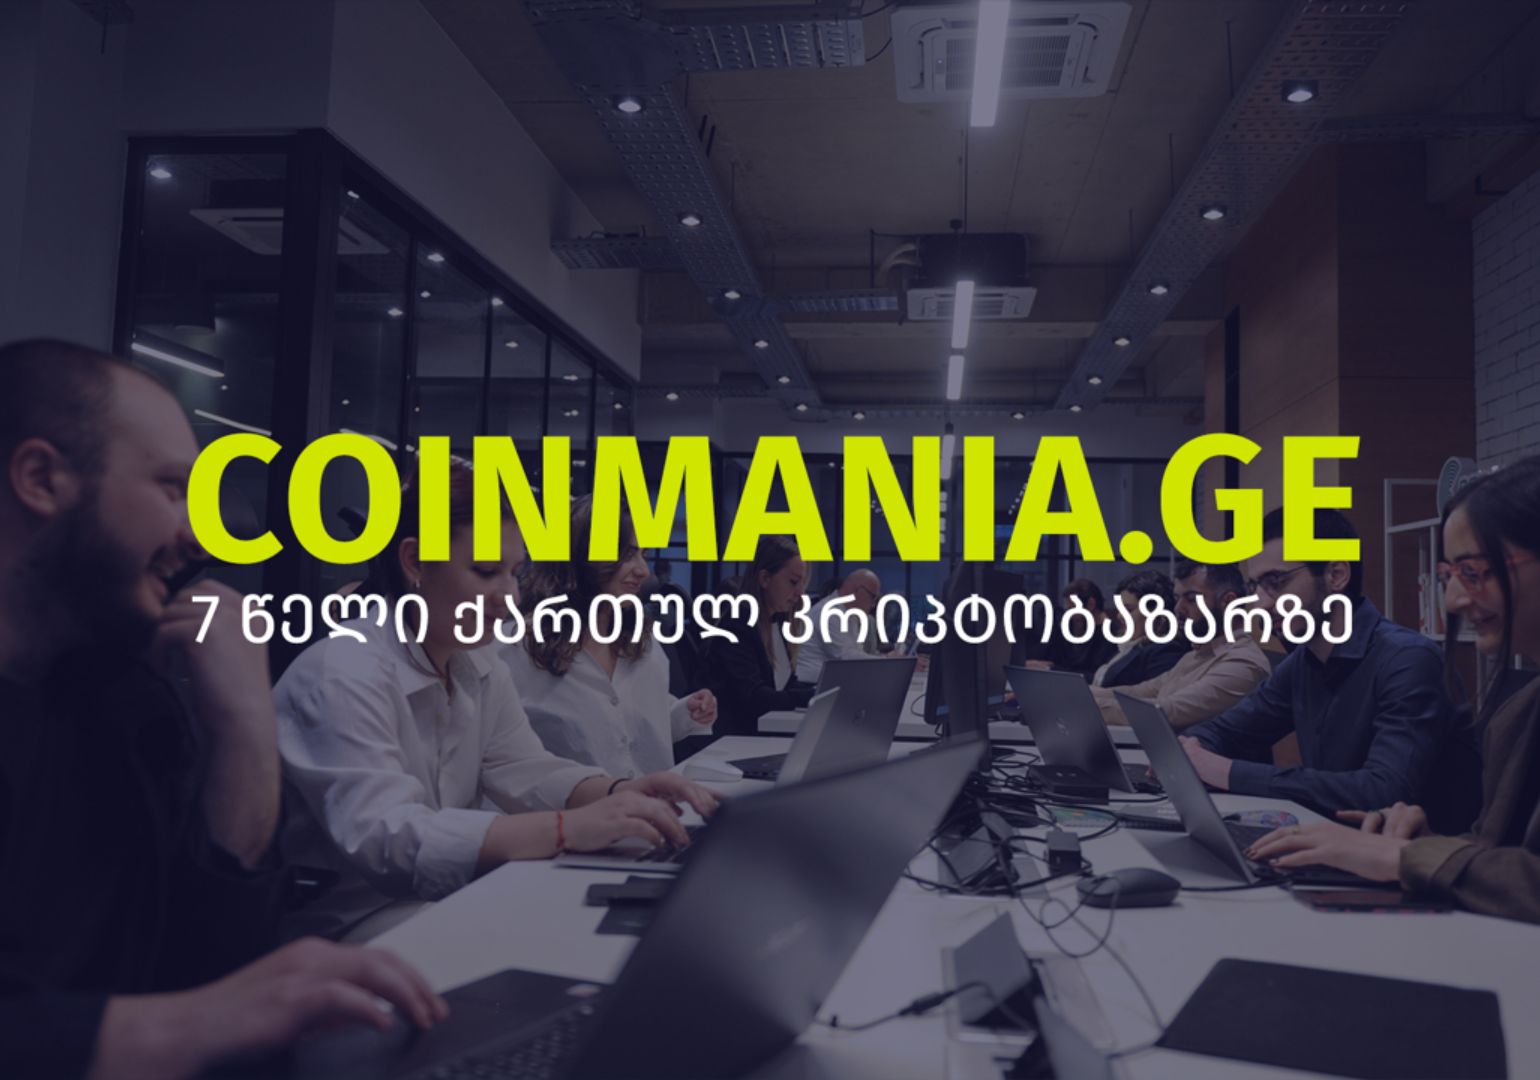 Coinmania.ge 7 წლისაა | კომპანიის მიერ განვლილი გზა და მიზნები